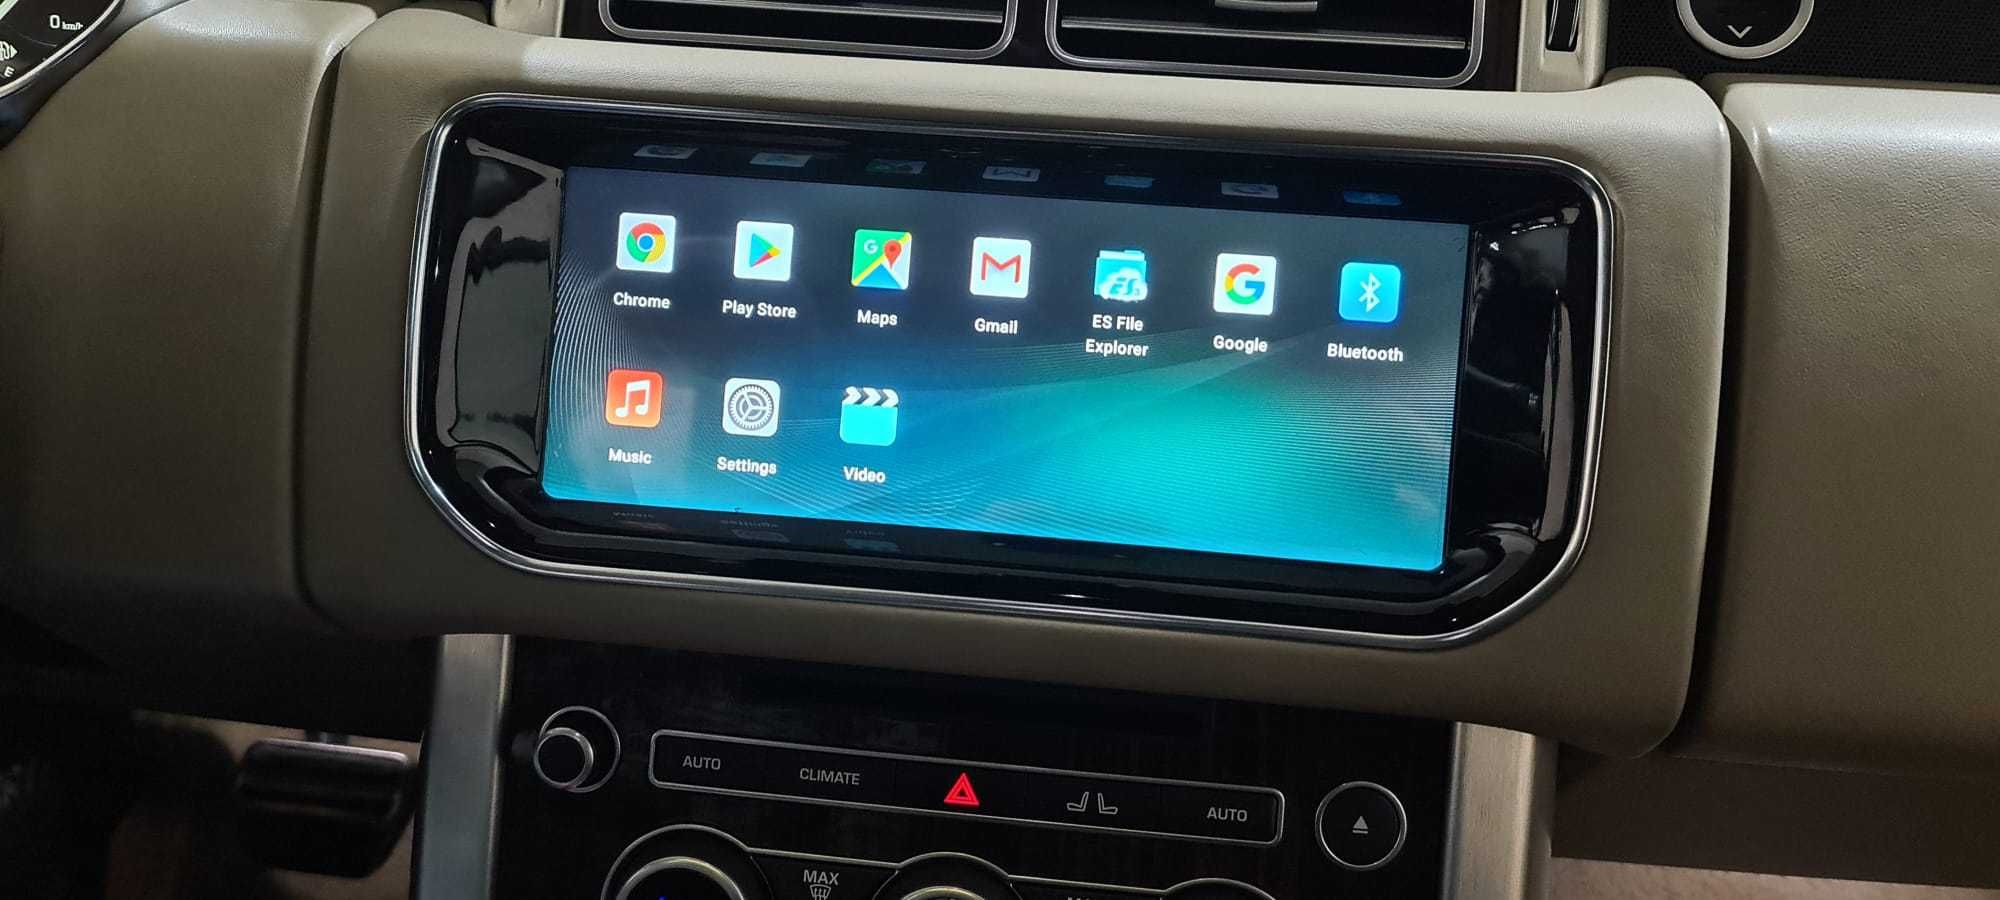 Vand Navigatie Ecran Android Range Rover Vogue L405 4GB RAM